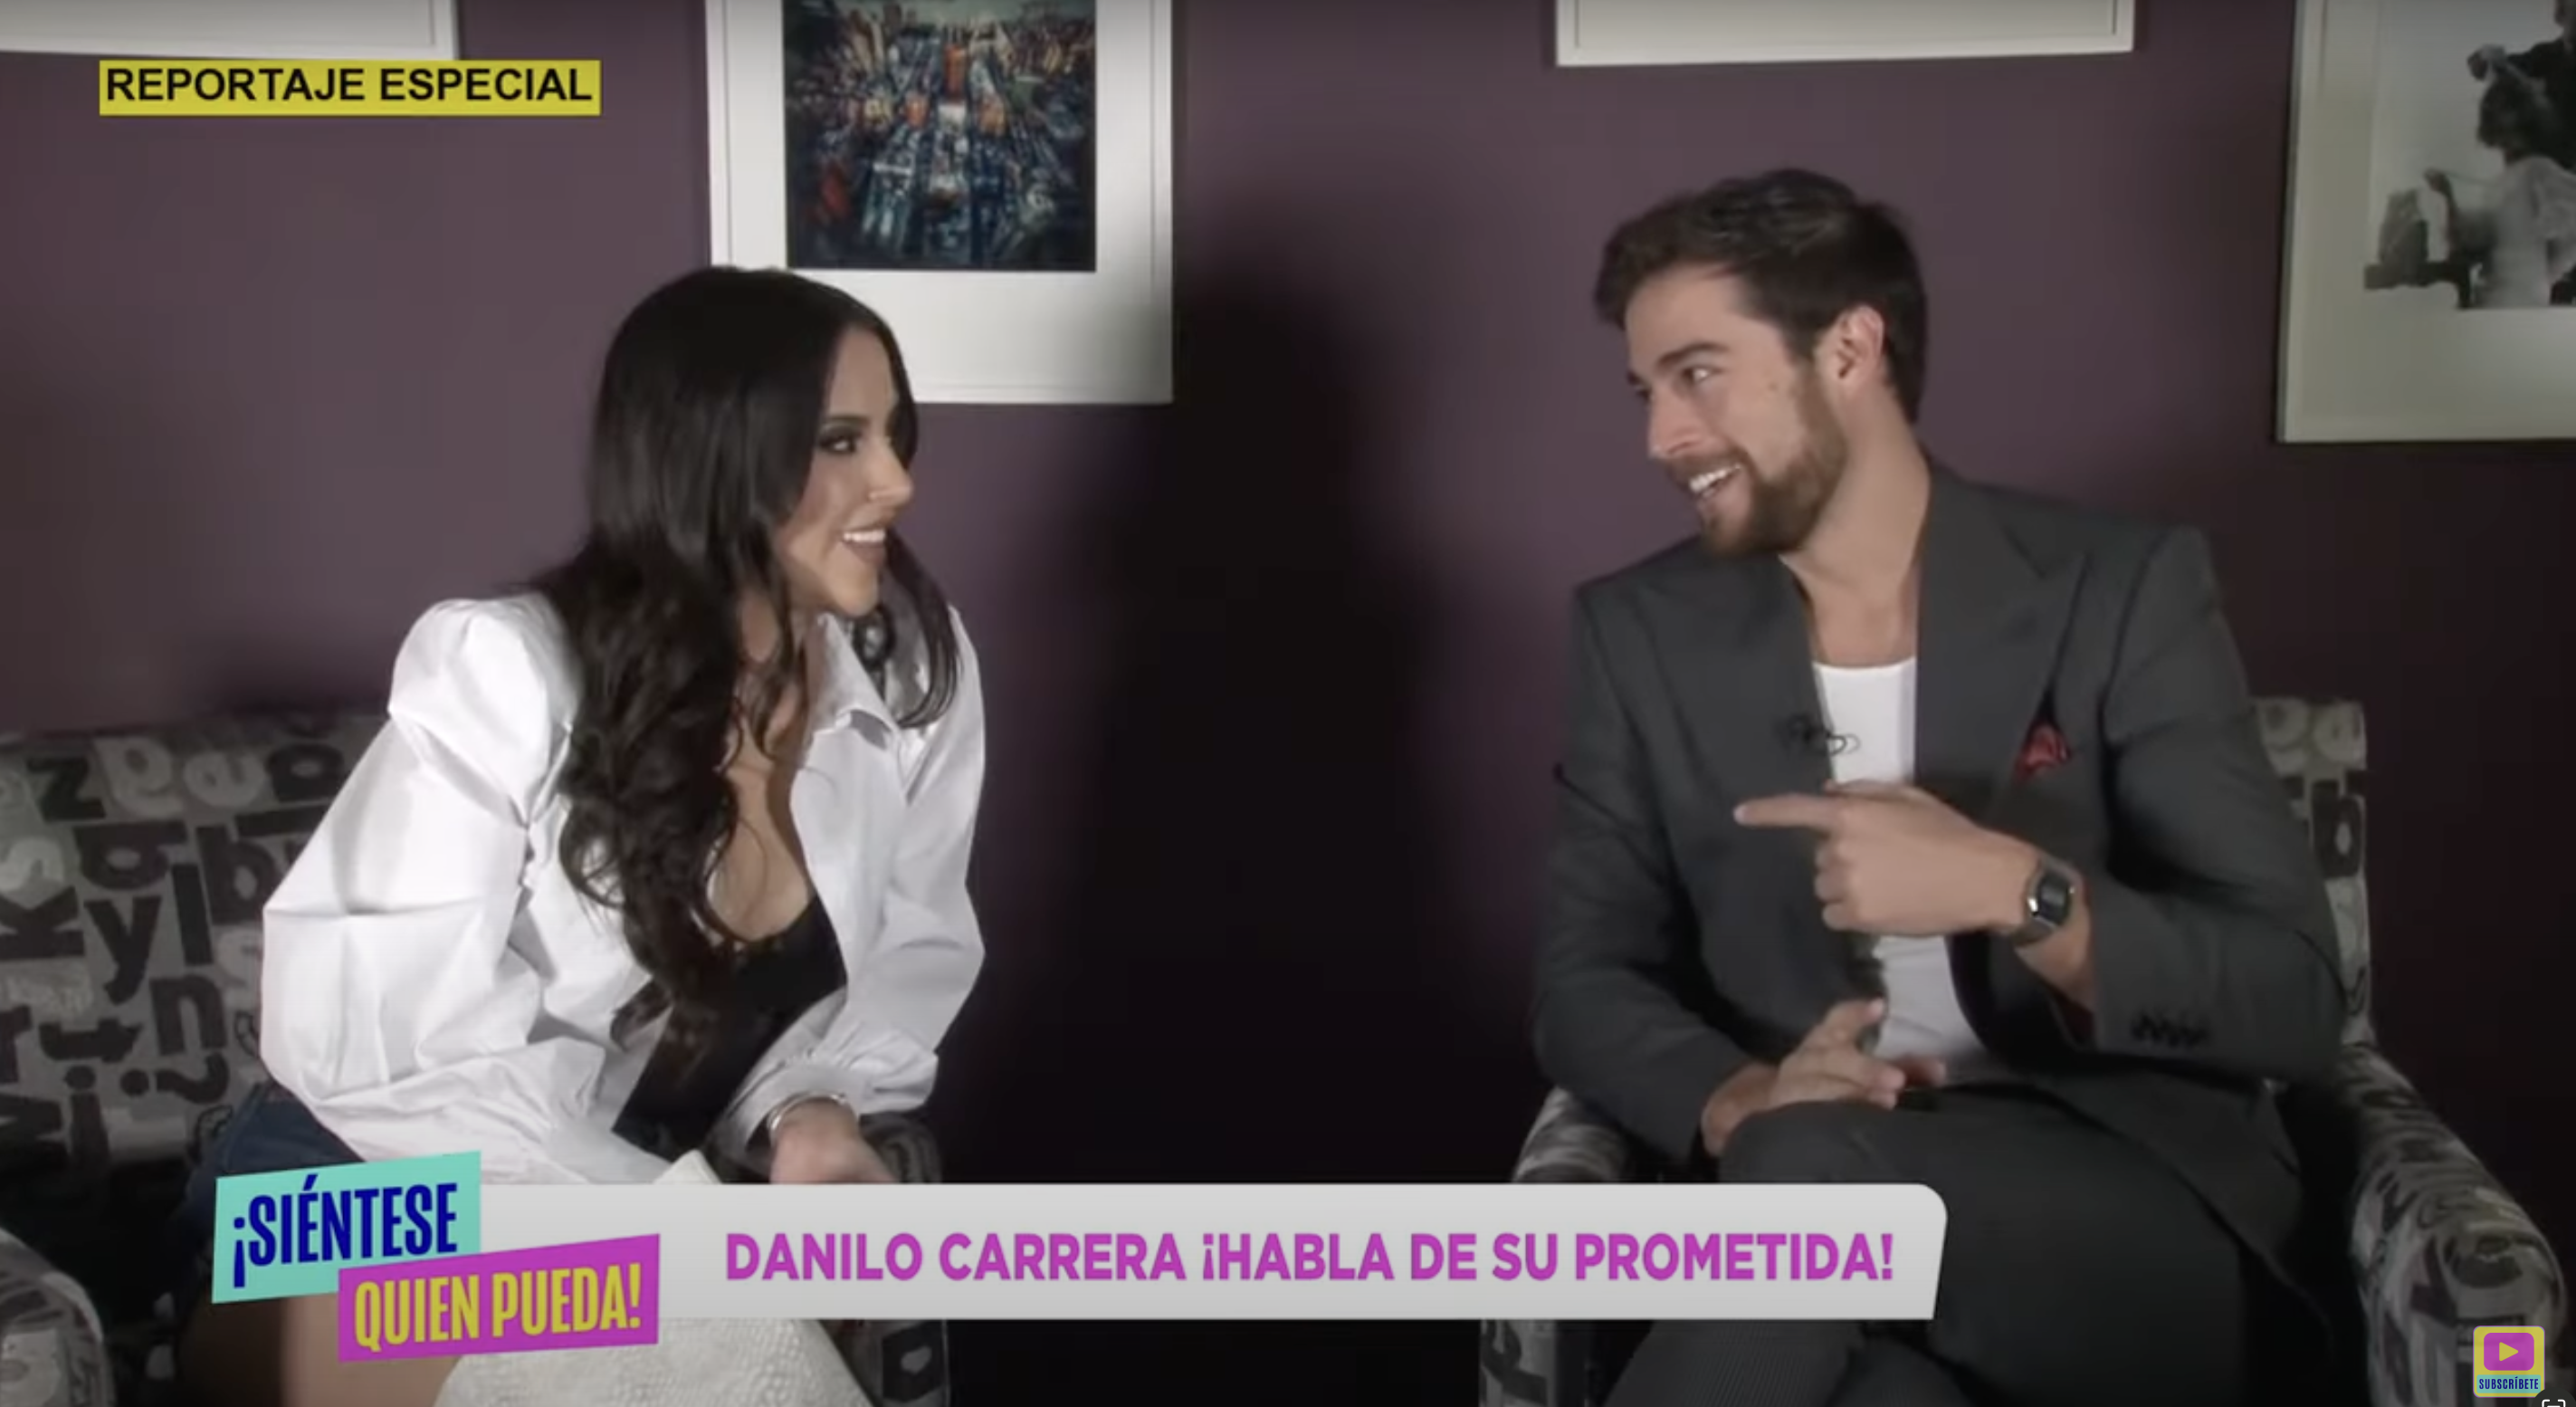 Danilo Carrera se confiesa y habla de su prometida, ¿Es de la realeza?